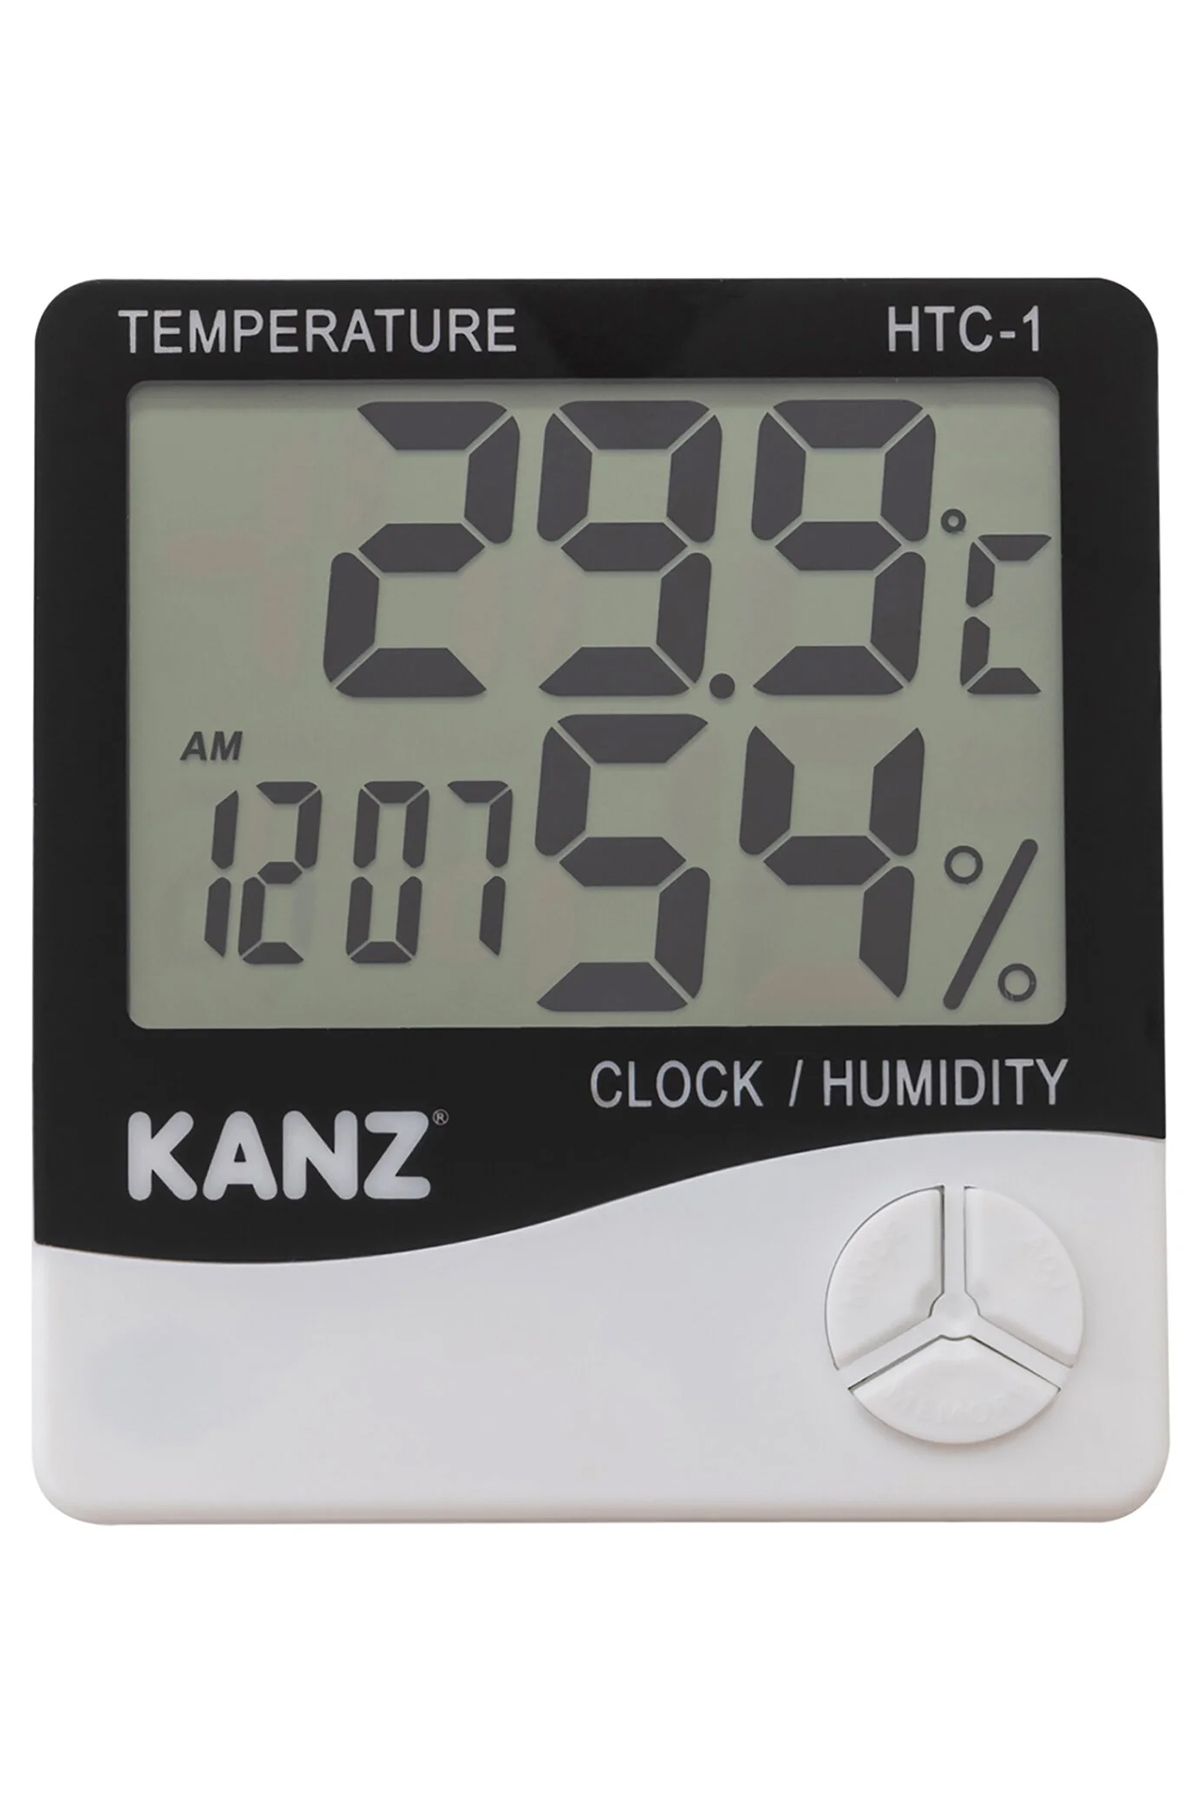 Kanz Dijital Nem Ve Sıcaklık Ölçer-Hygrometre Termometre